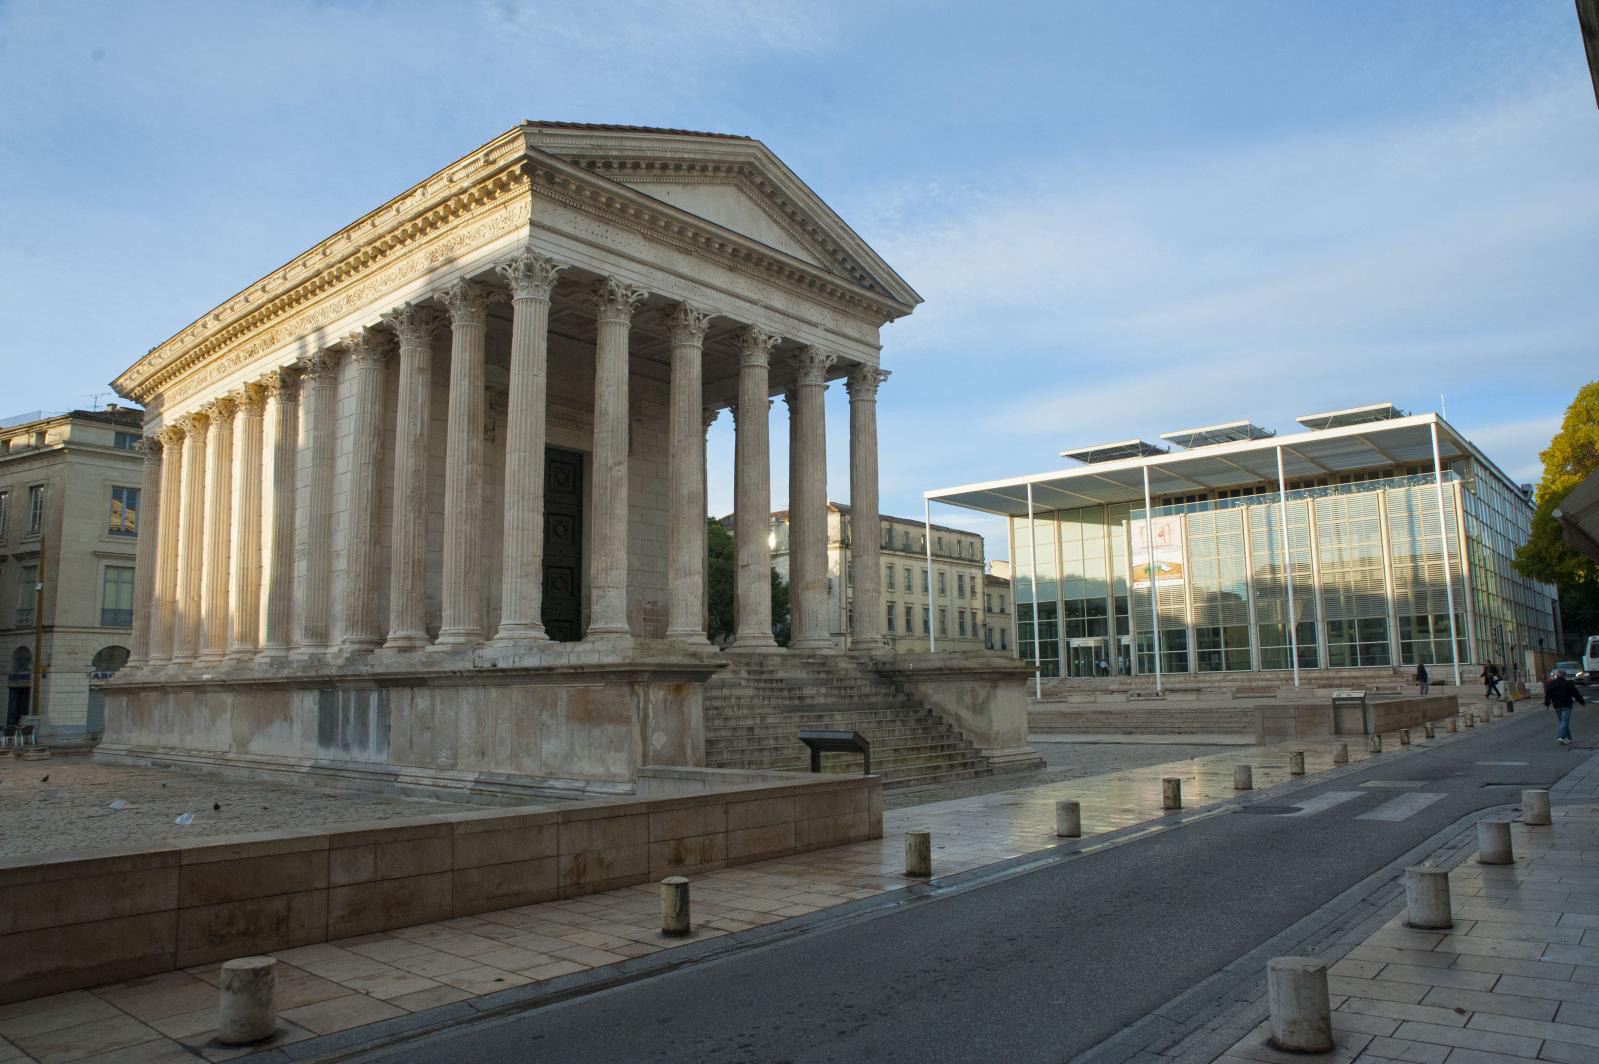 The Carré d’art in Nîmes Turns Thirty